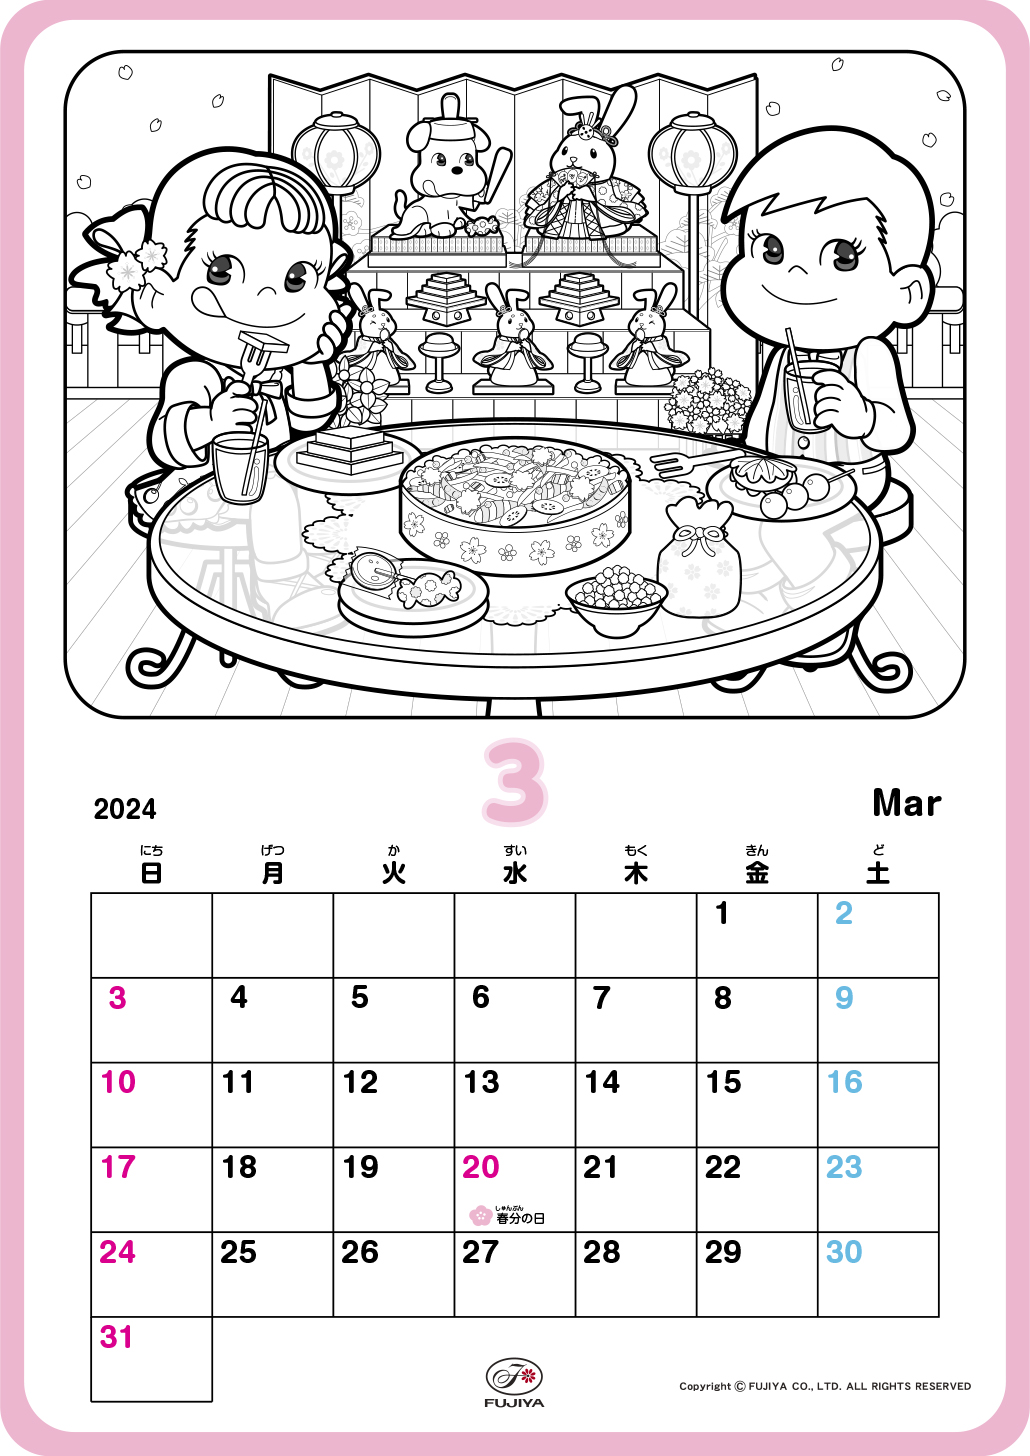 ペコちゃんとポコちゃんがひな祭りでお餅やお菓子をたくさん食べてるね♪ぬったあとは、カレンダーとして使ってね。